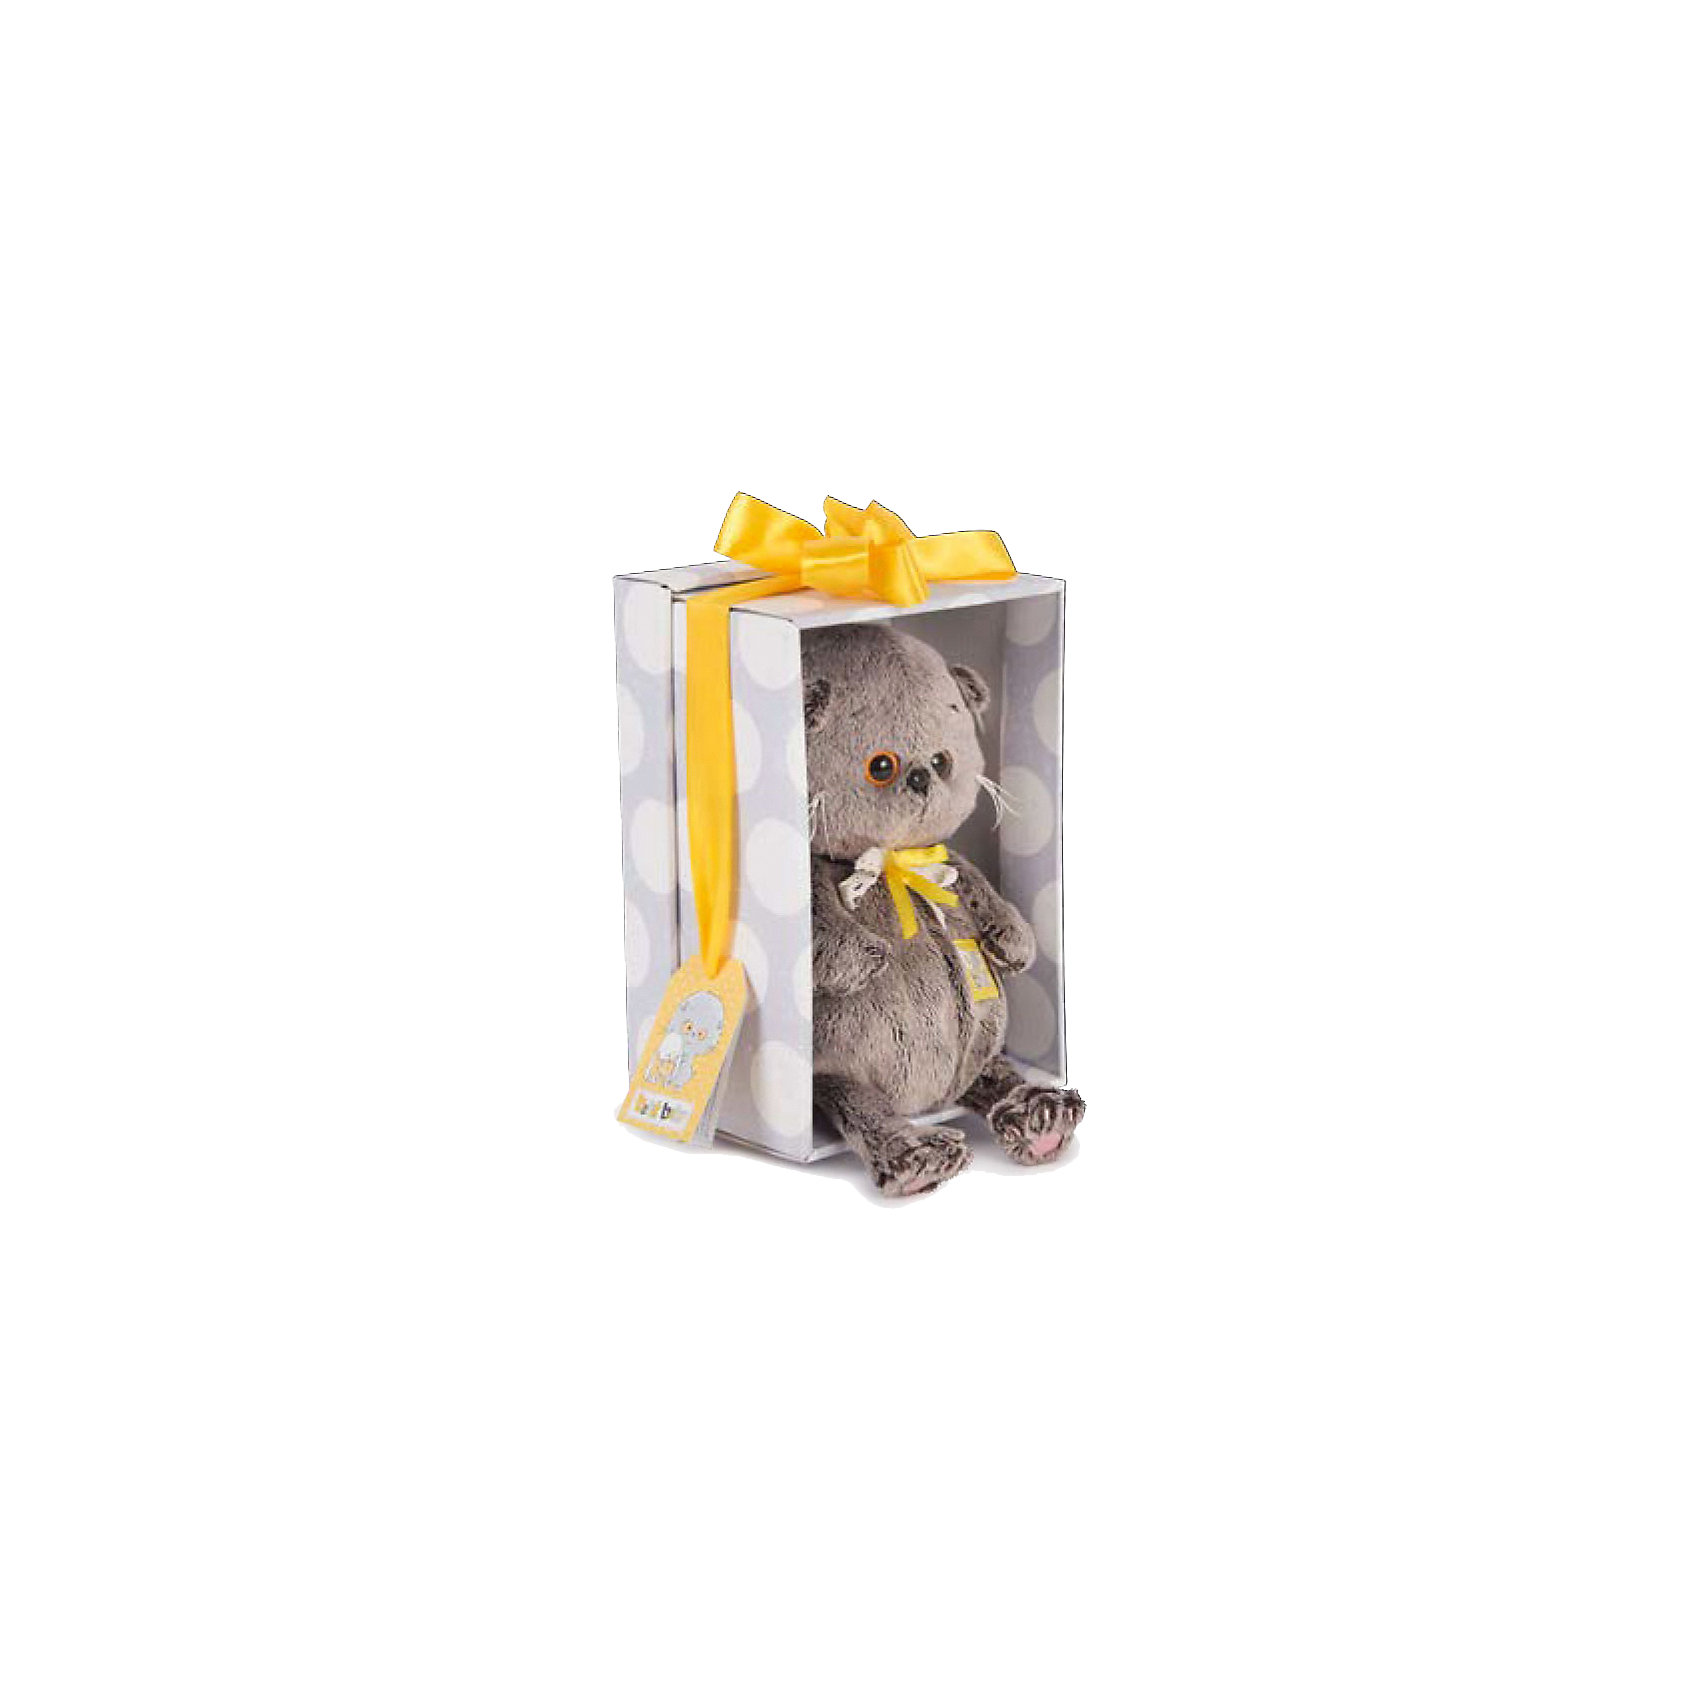 Мягкая игрушка Кот Басик baby с желтым тюльпаном, 20 см Budi Basa 14080168